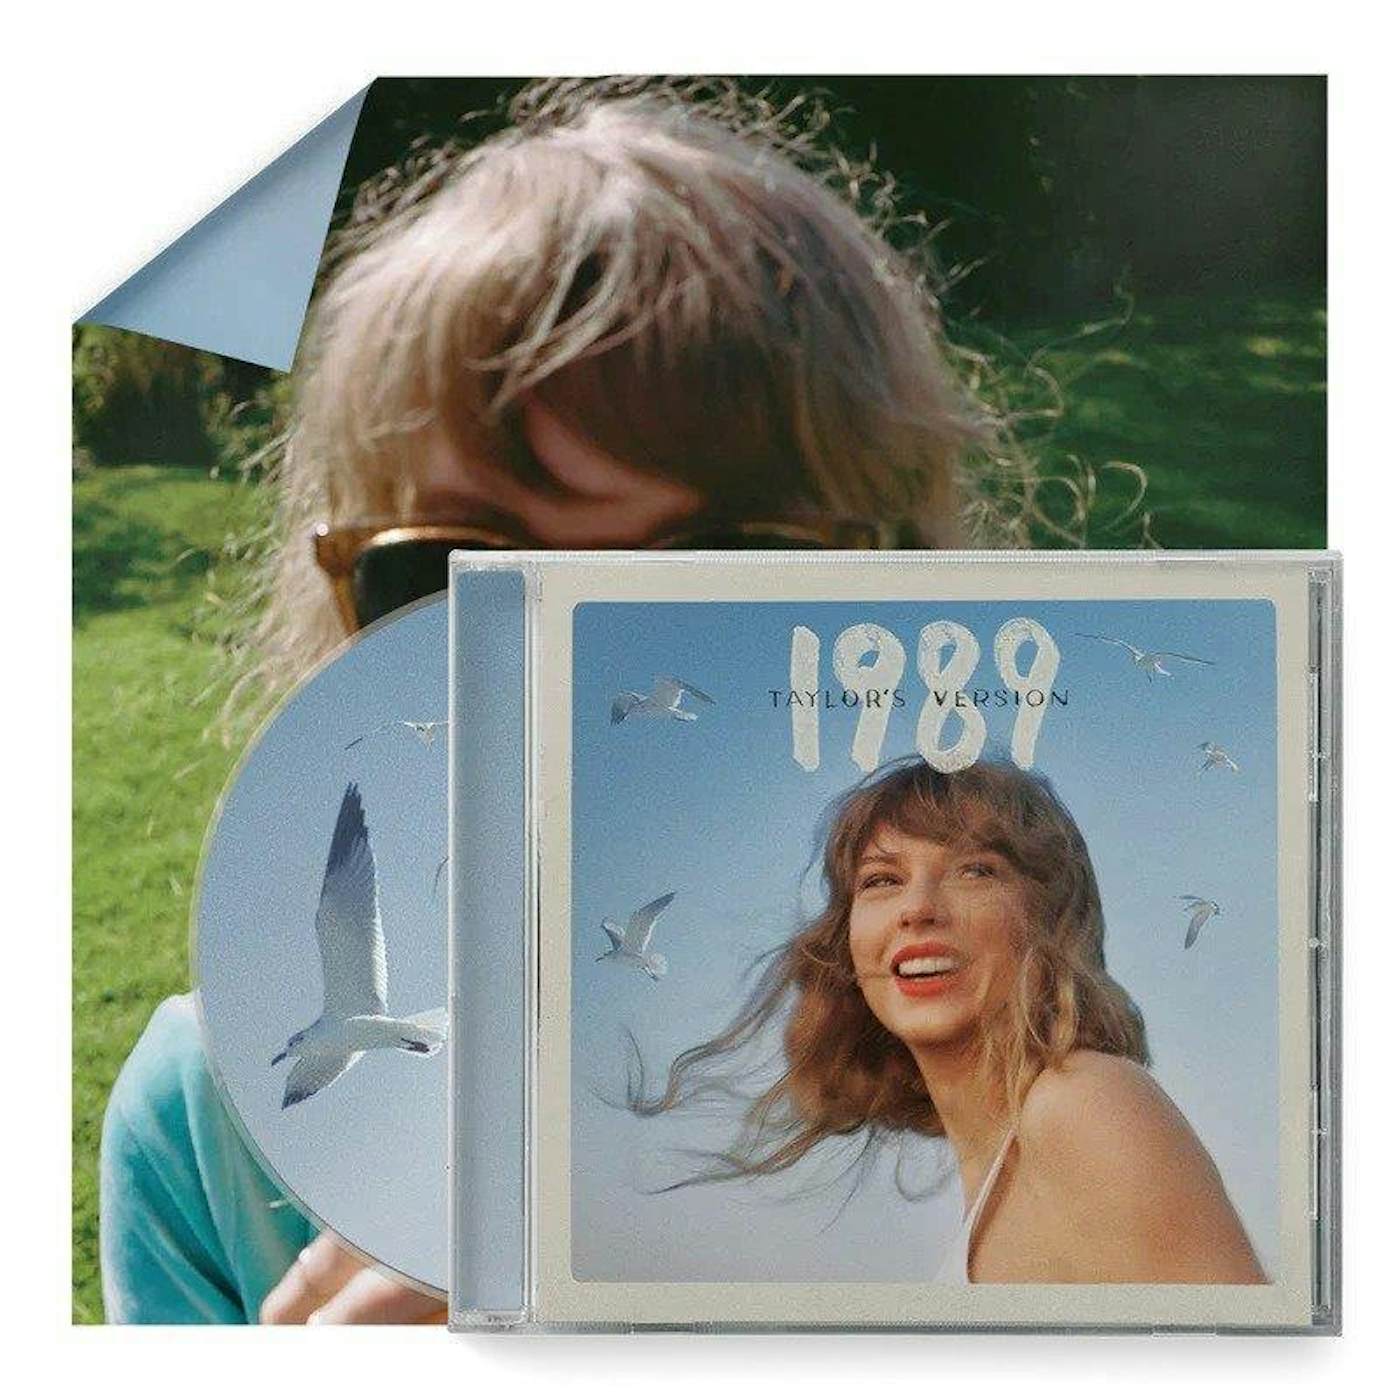 1989 (Taylor's Version)[2 LP]